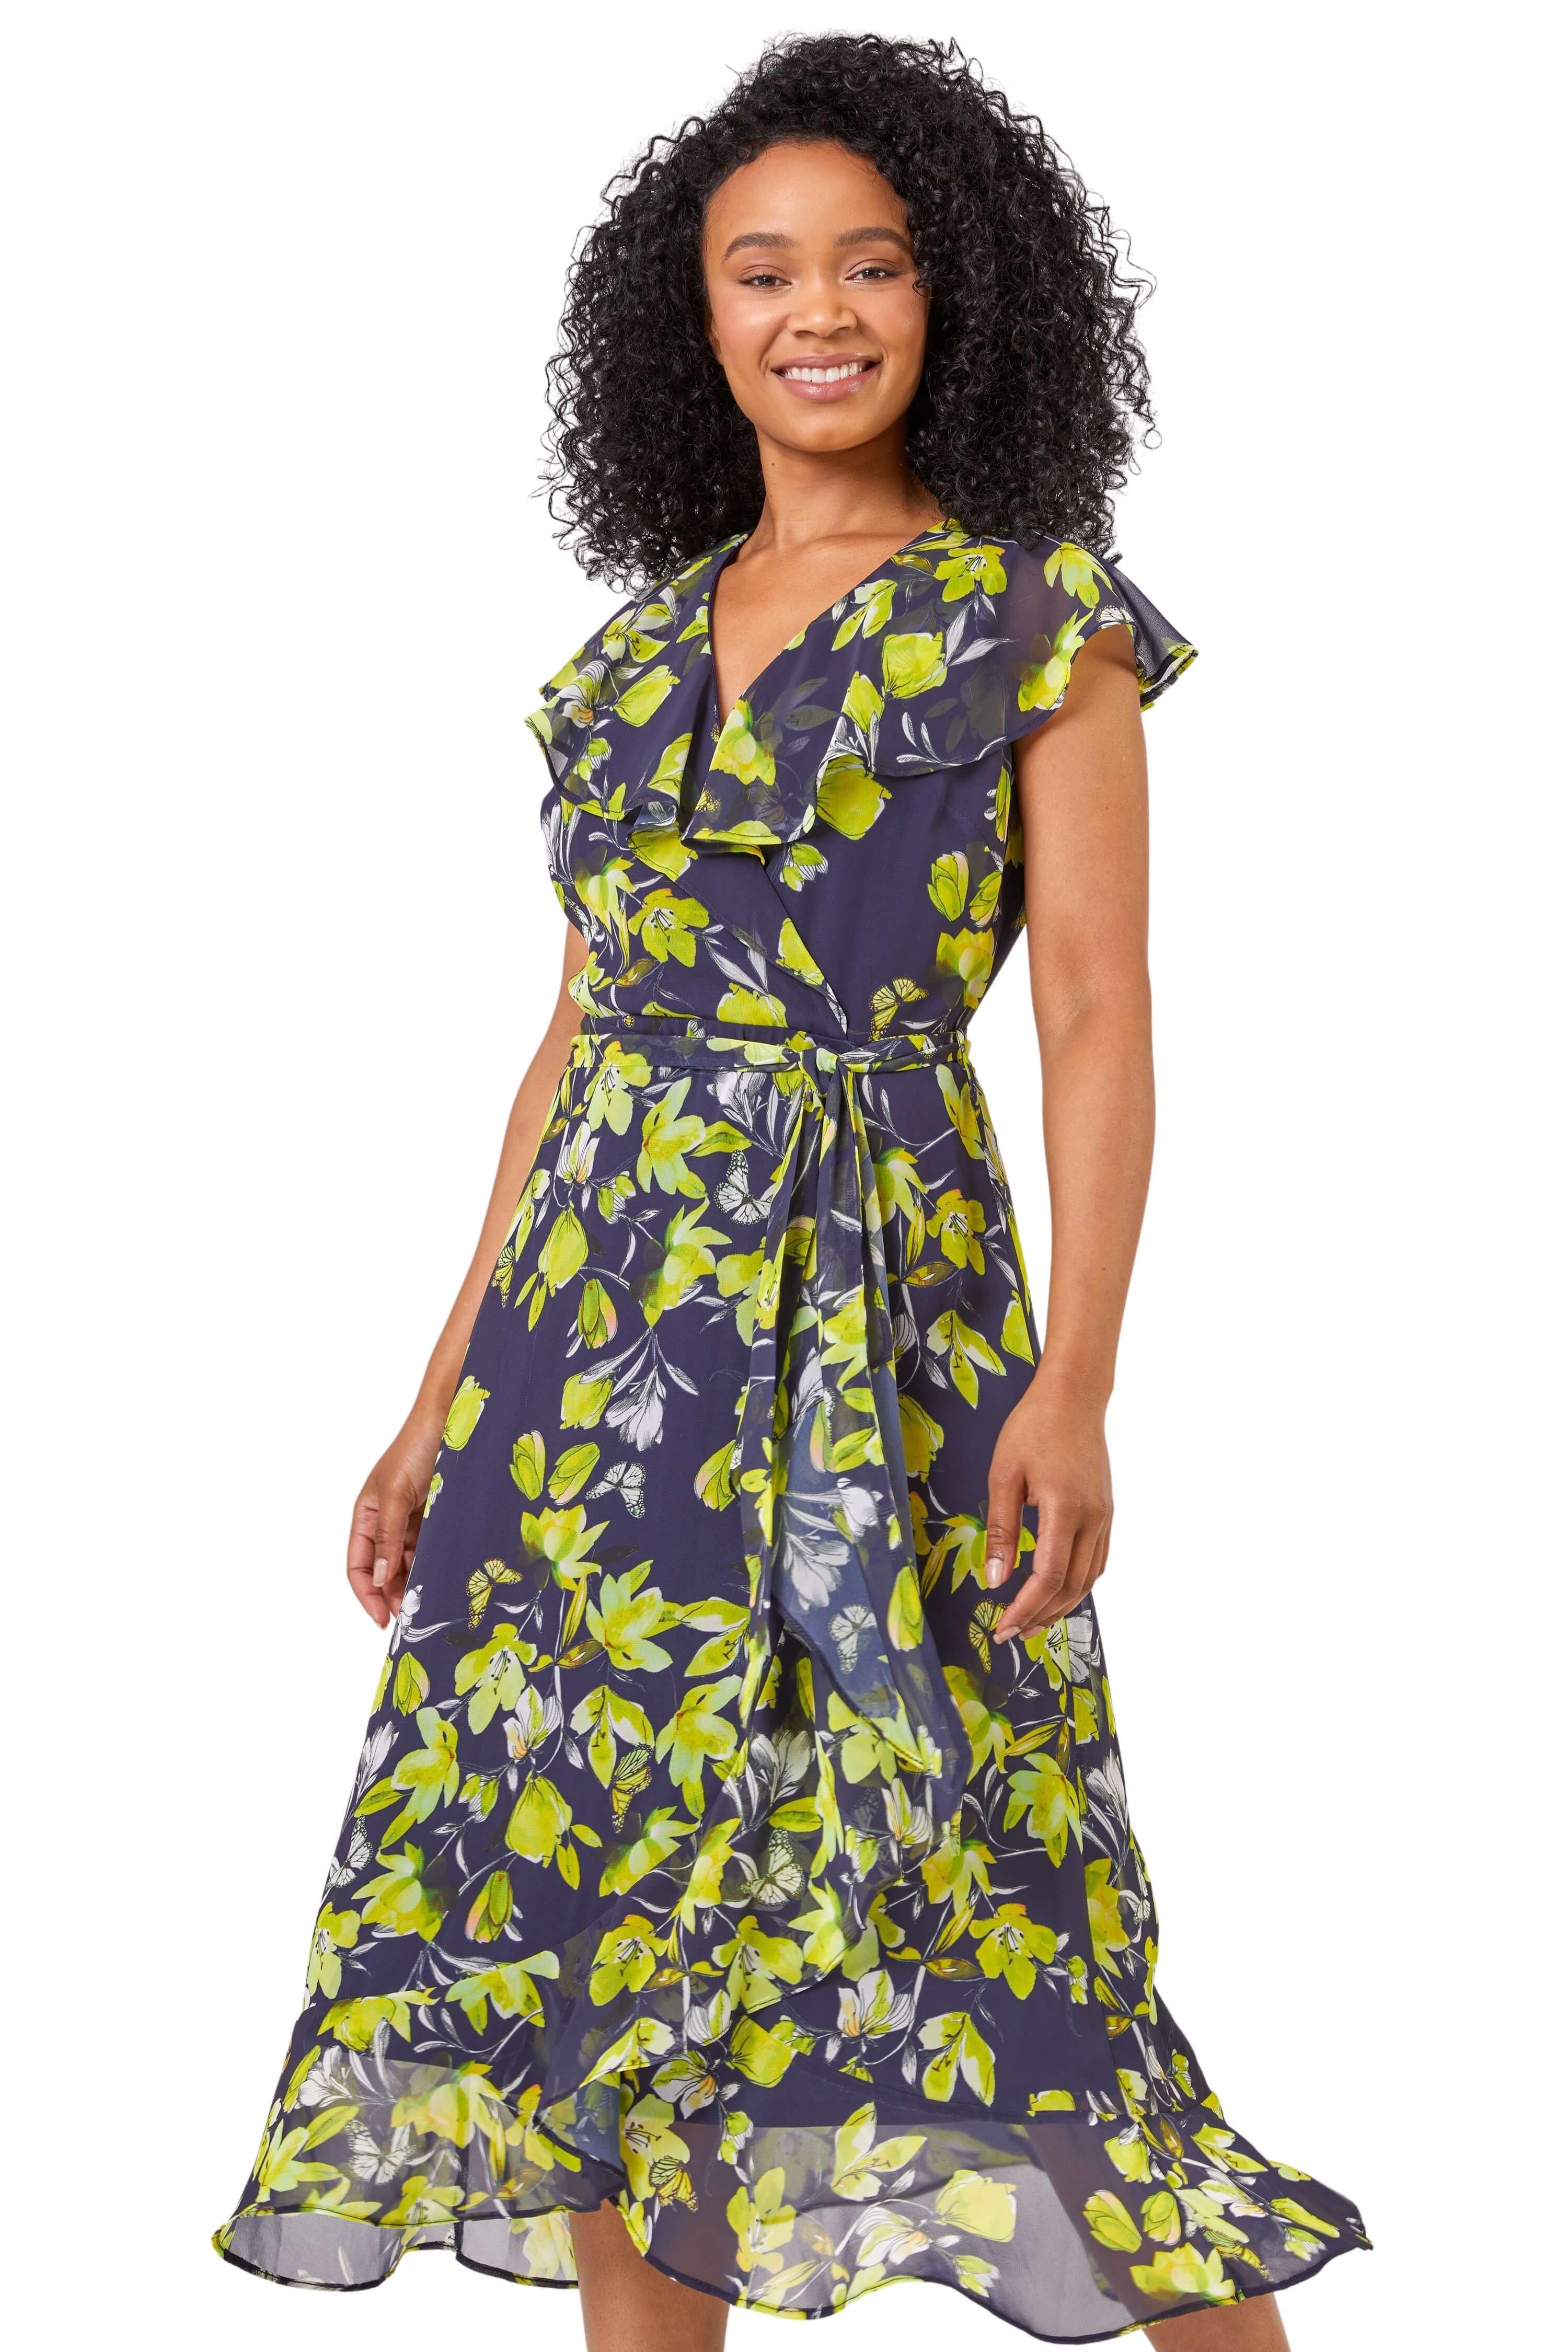 Миниатюрное шифоновое платье с запахом и оборками с цветочным принтом Roman, синий женское шифоновое платье с цветочным принтом v образным вырезом и оборками